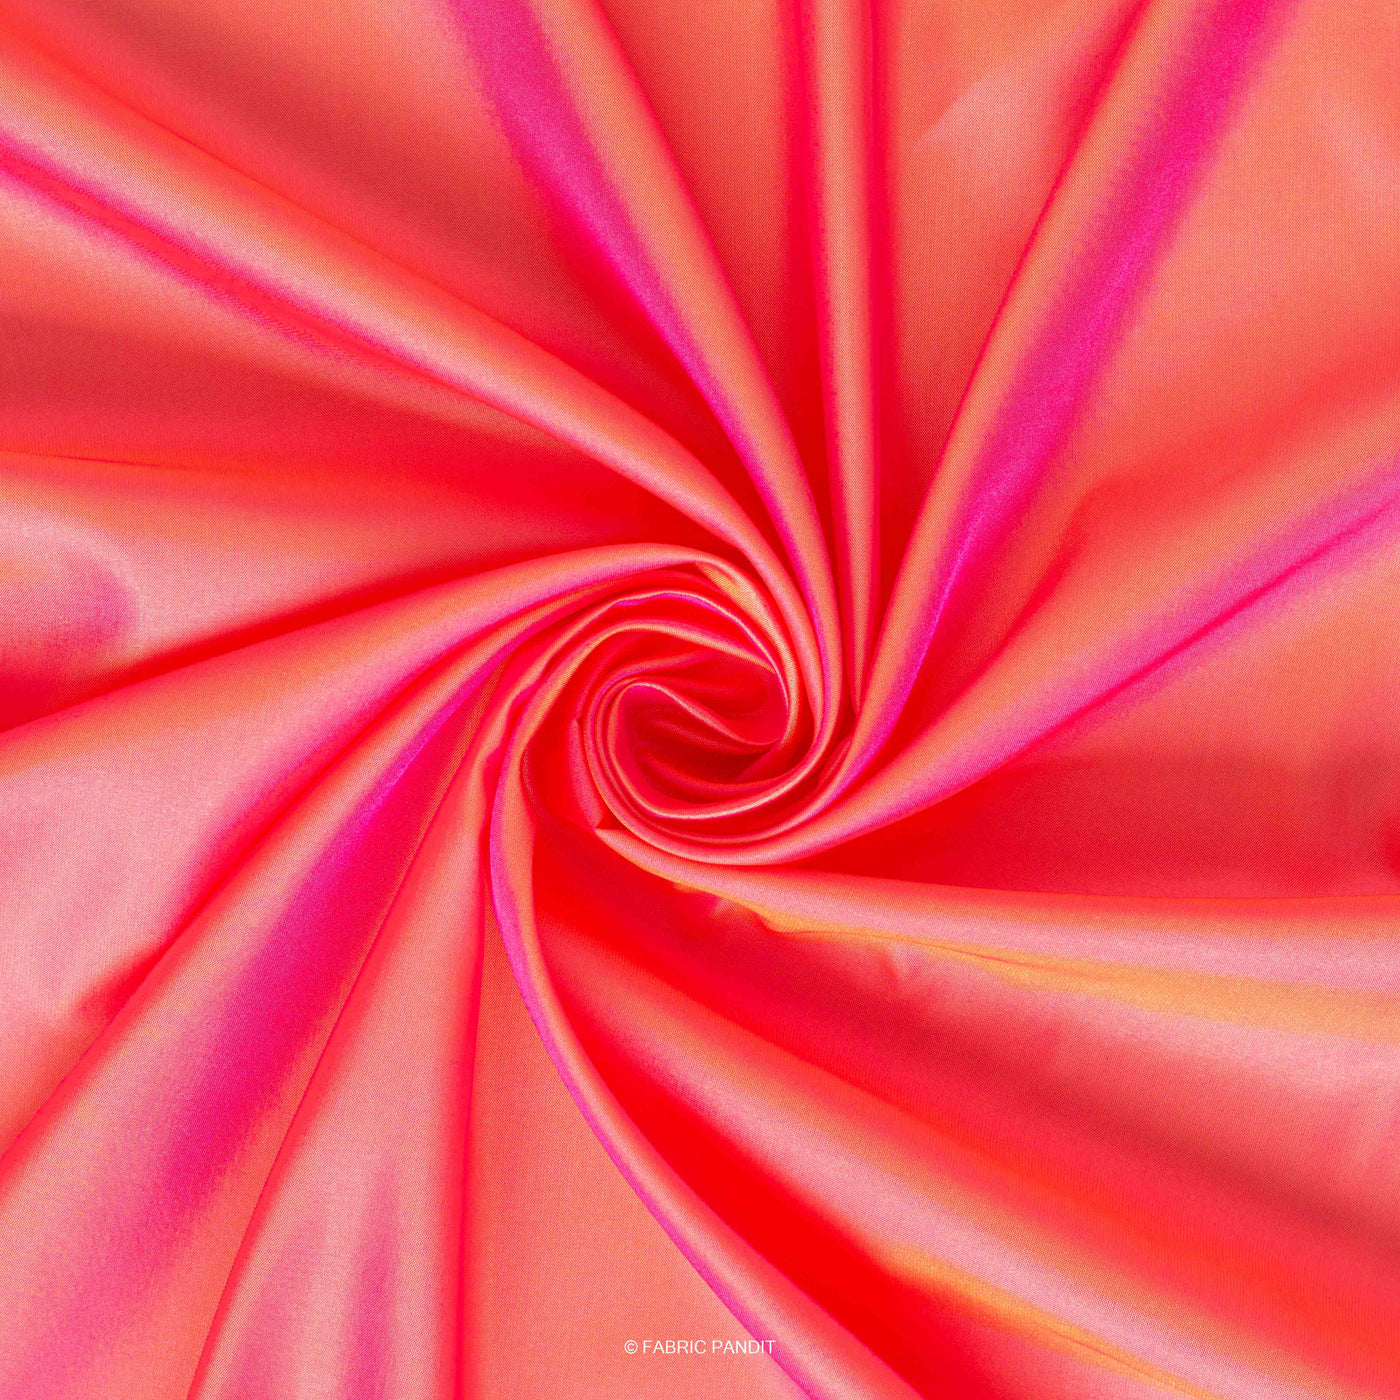 Fabric Pandit Cut Piece 0.50M (CUT PIECE) Coral Pink Plain Premium Dual Tone Paper Silk Fabric (Width 44 Inches)